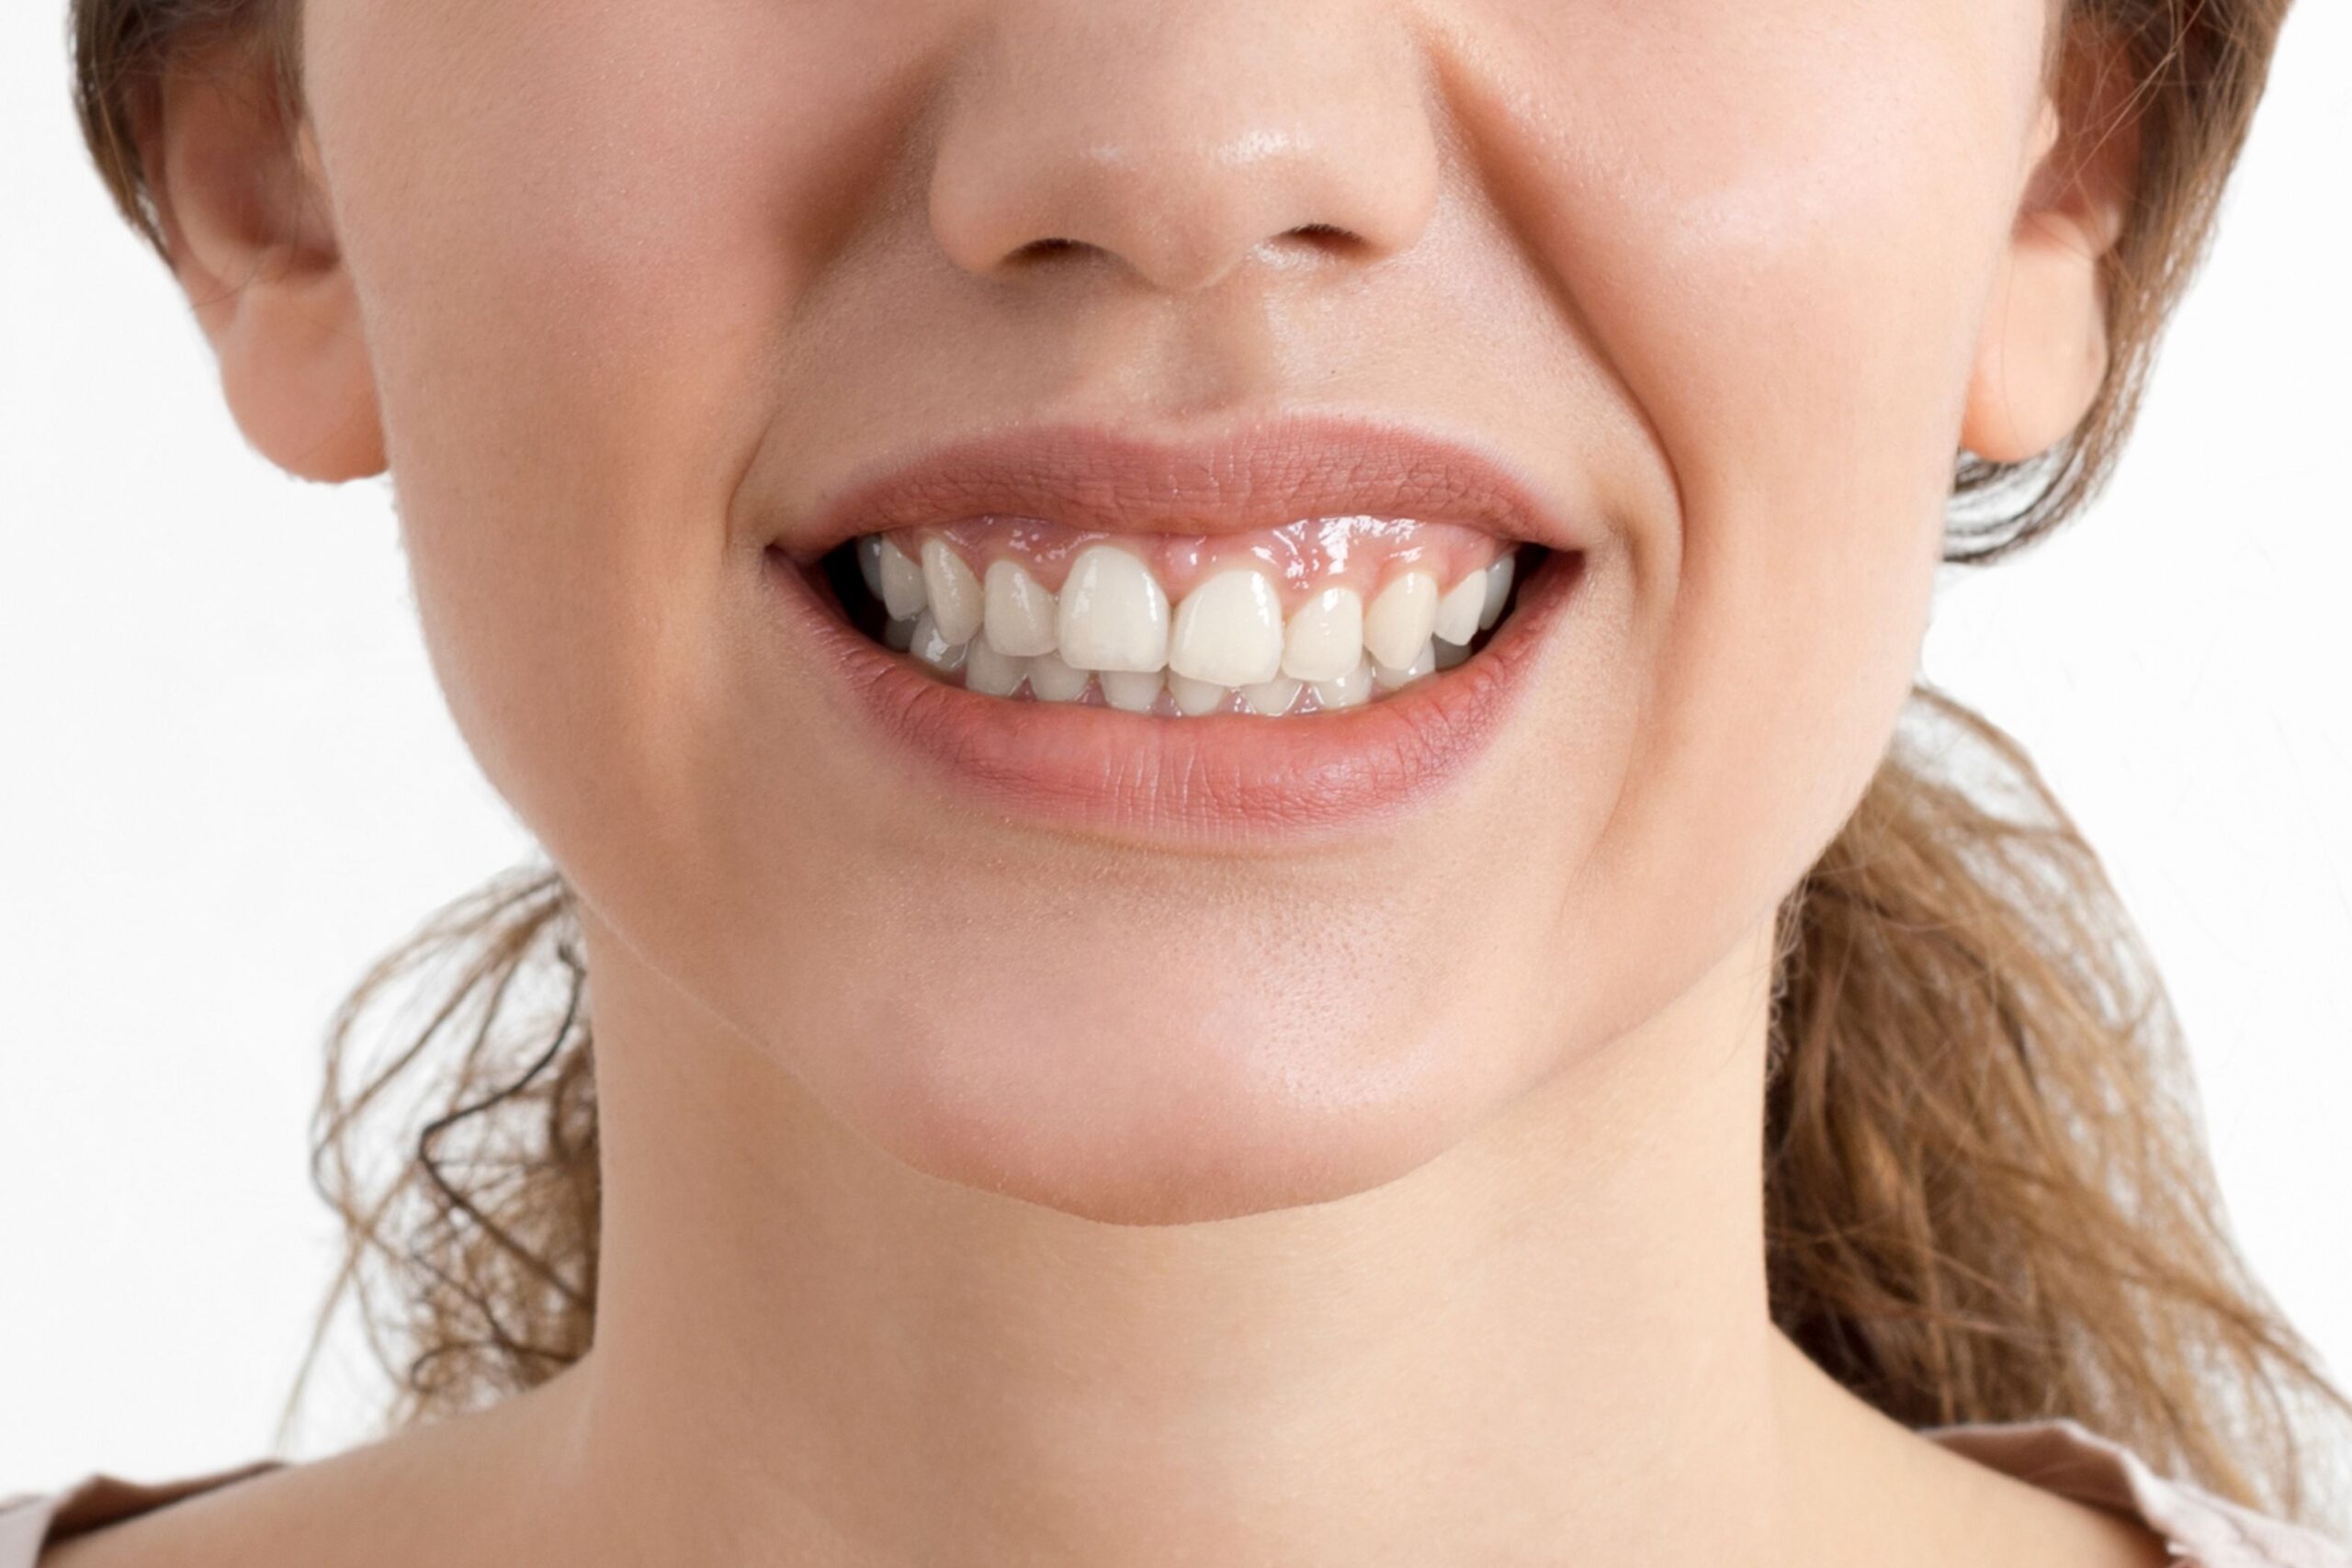 Teeth Clenching / Teeth Grinding / Bruxism